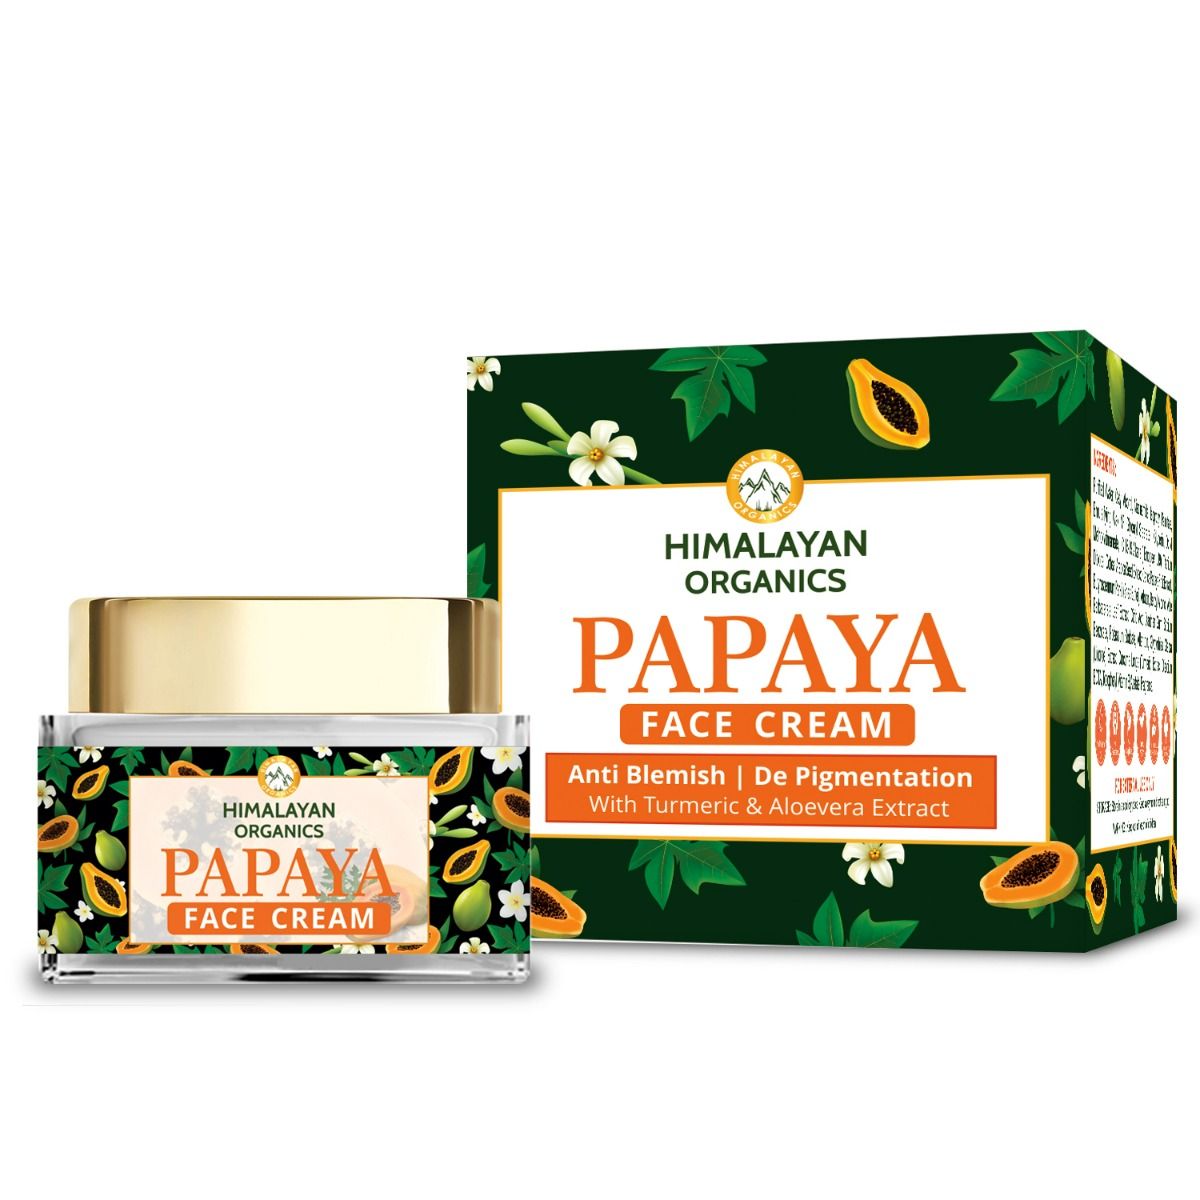 Buy Himalayan Organics Papaya Face Cream, 50 ml Online